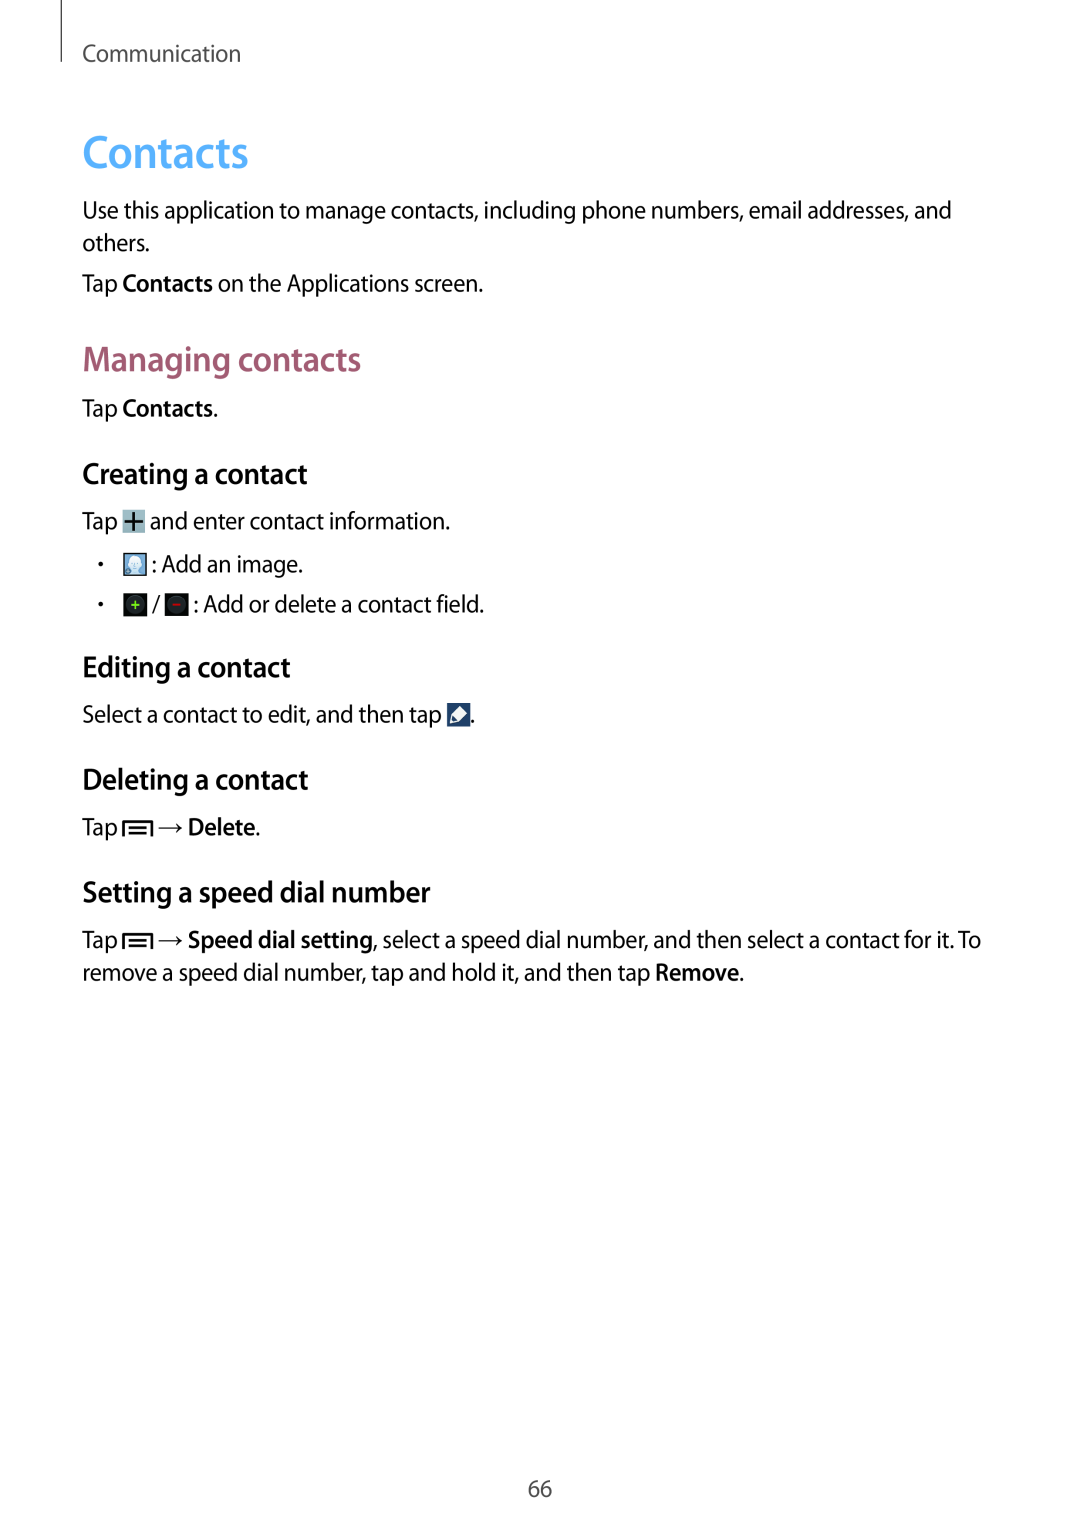 Samsung SM-N9005ZKEKSA manual Contacts, Managing contacts, Creating a contact, Editing a contact, Deleting a contact 